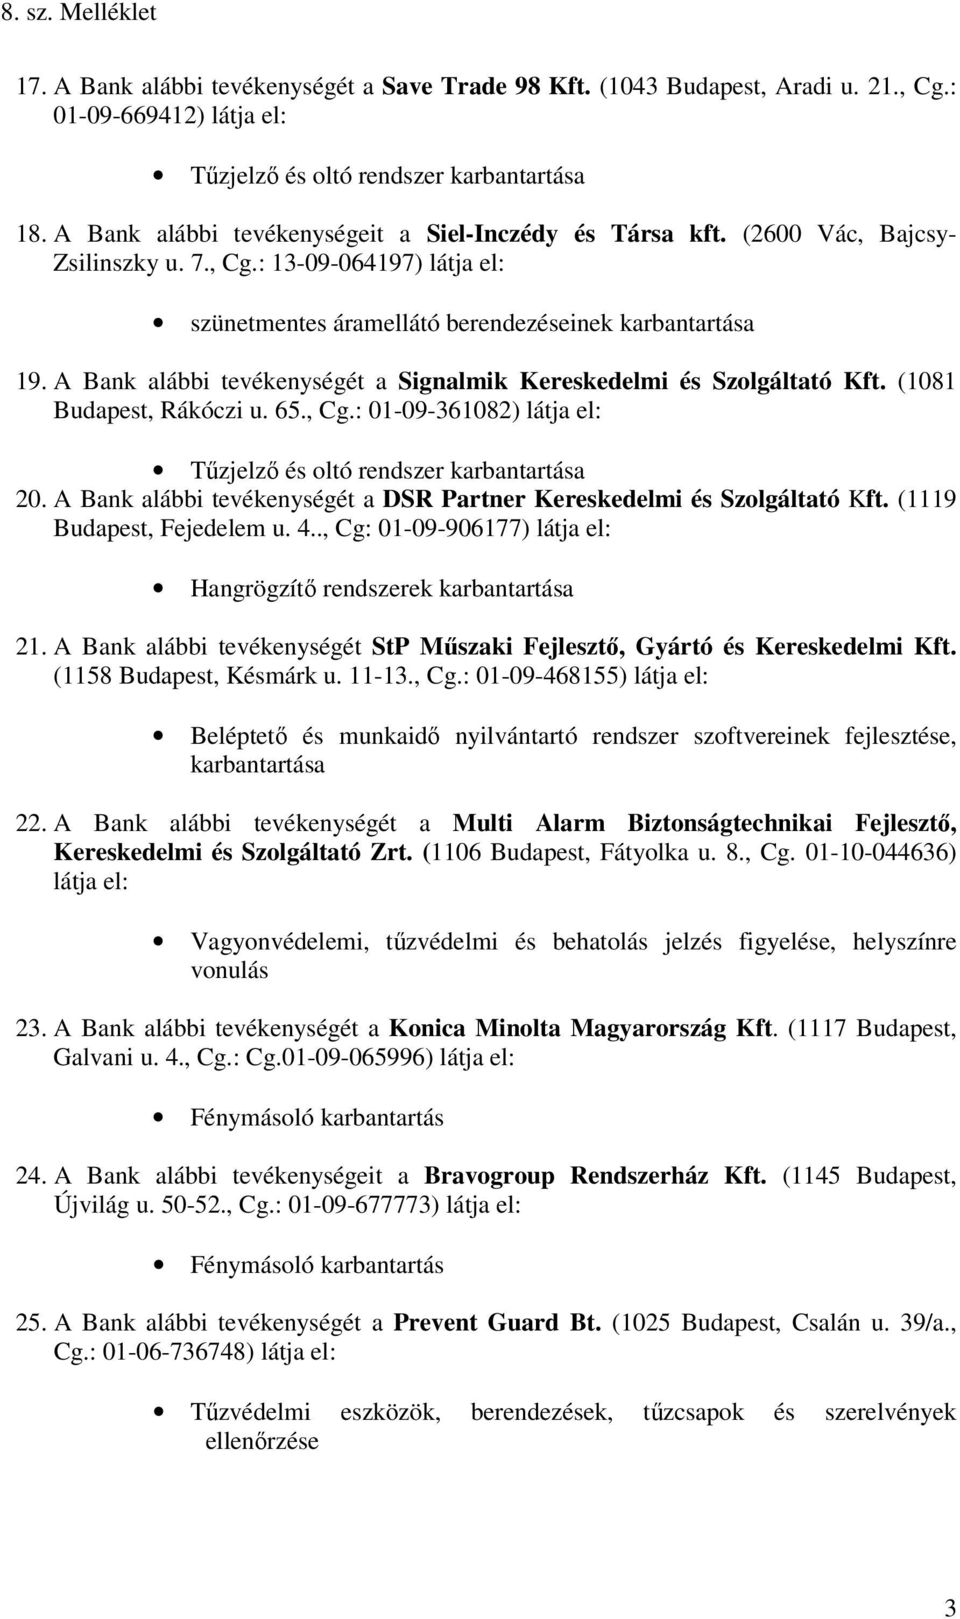 A Bank alábbi tevékenységét a Signalmik Kereskedelmi és Szolgáltató Kft. (1081 Budapest, Rákóczi u. 65., Cg.: 01-09-361082) látja el: Tűzjelző és oltó rendszer karbantartása 20.